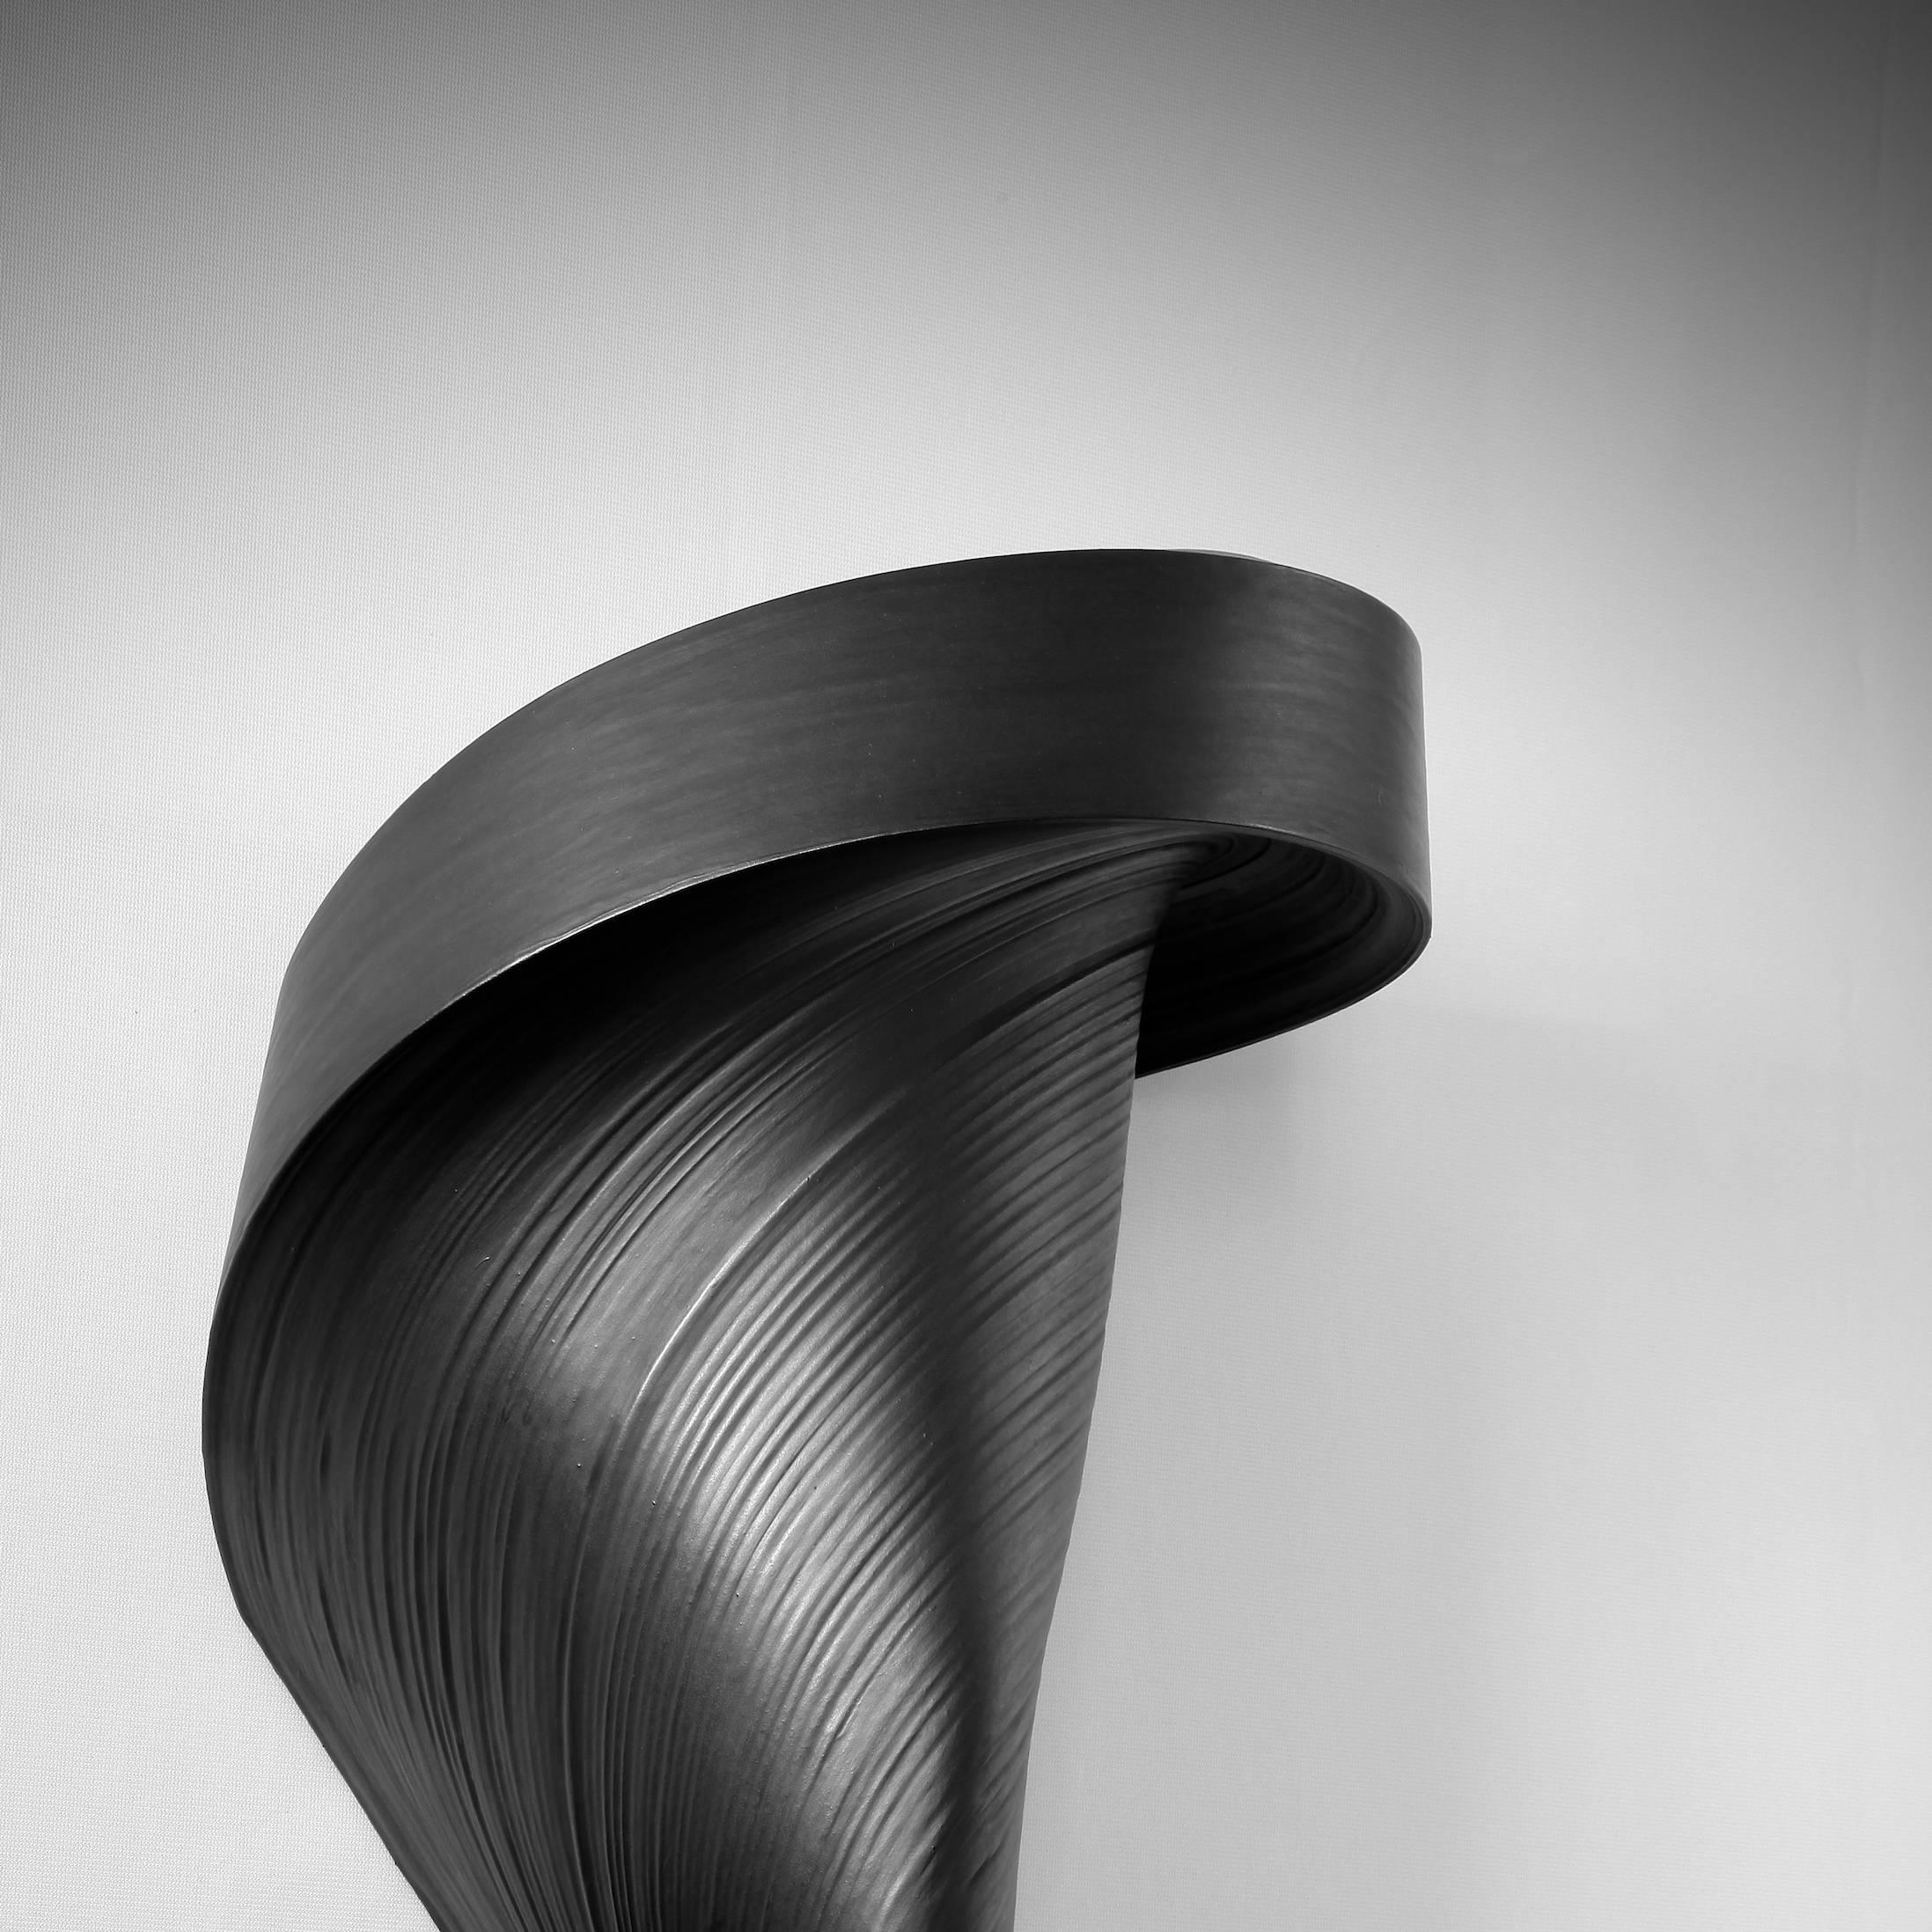 JK784 black- geometric abstract wall sculpture - Sculpture by Jae Ko